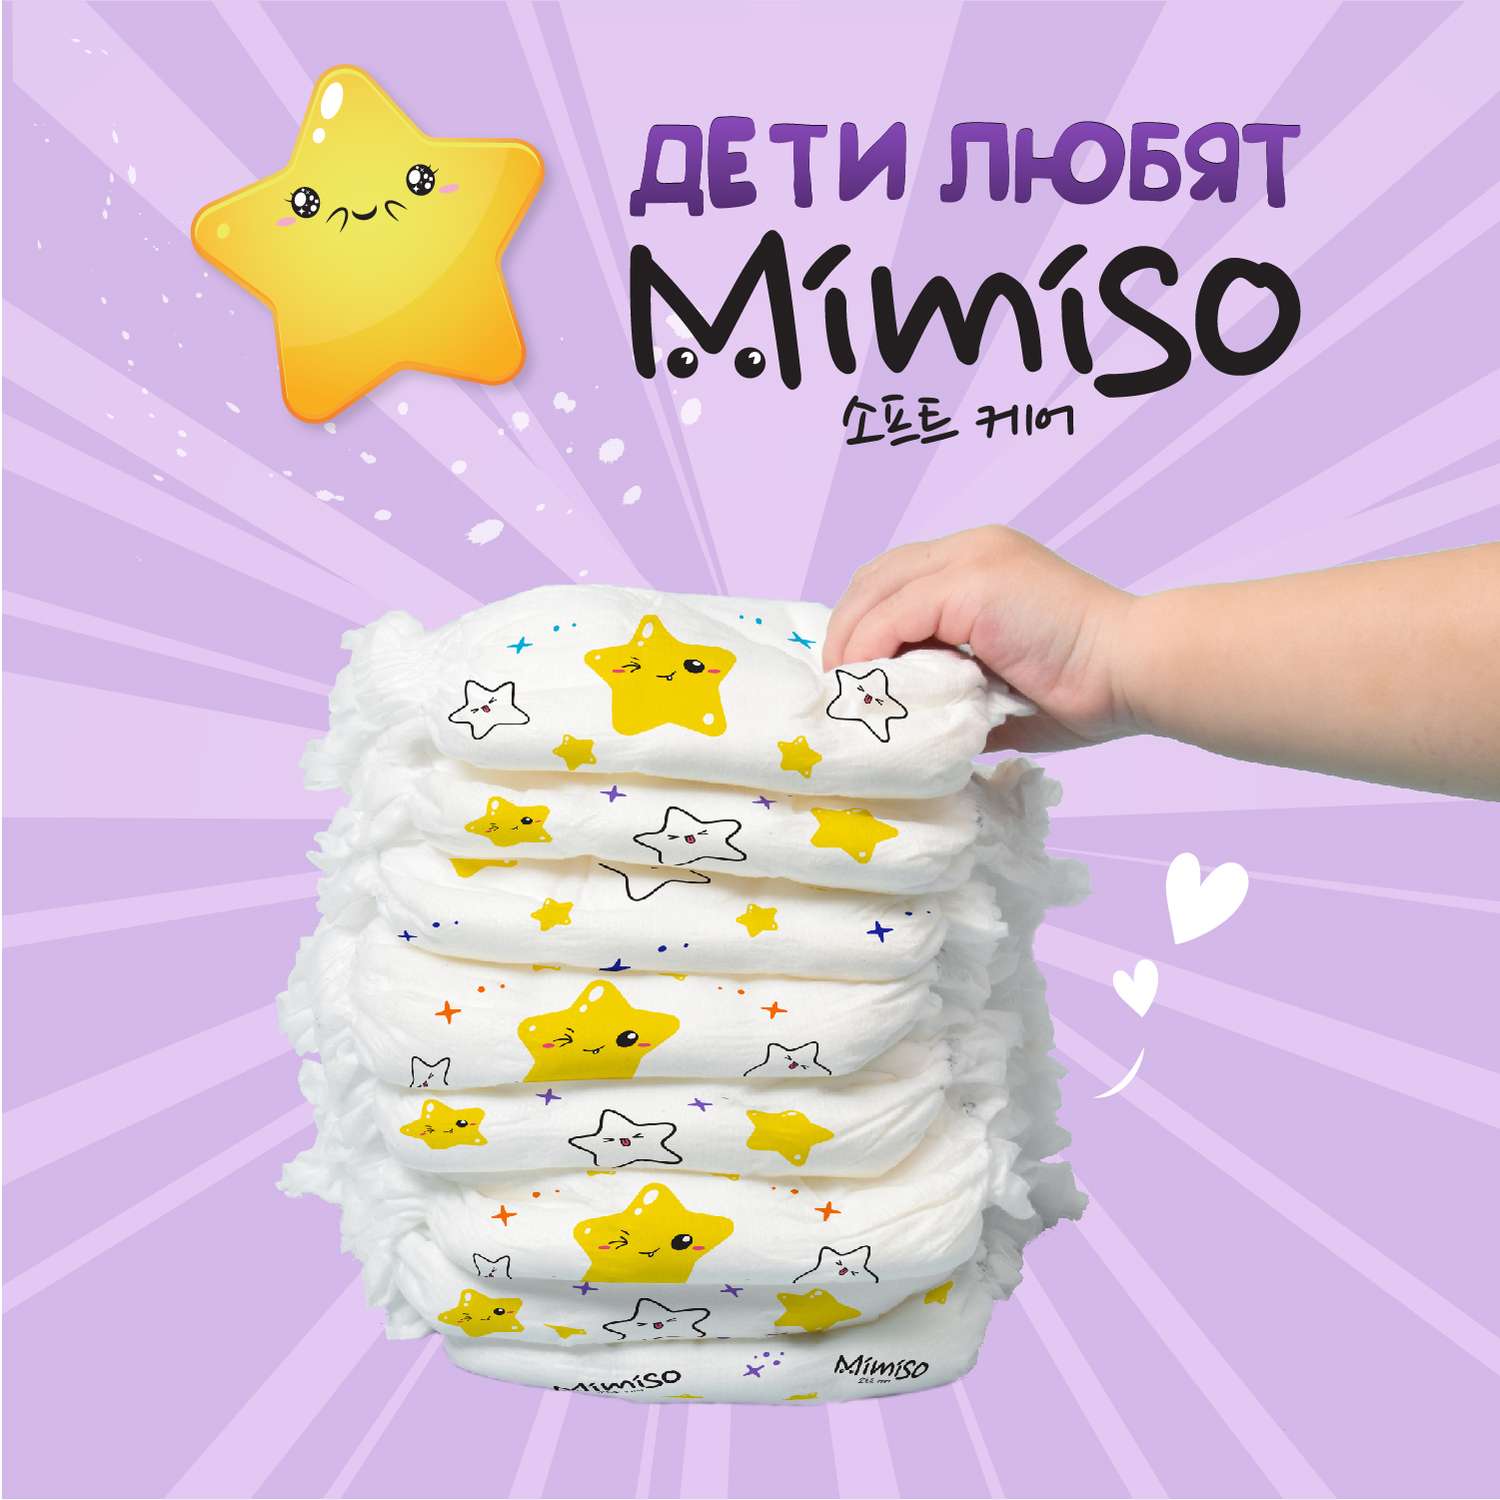 Трусики Mimiso одноразовые для детей 5/XL 13-20 кг 36шт - фото 4